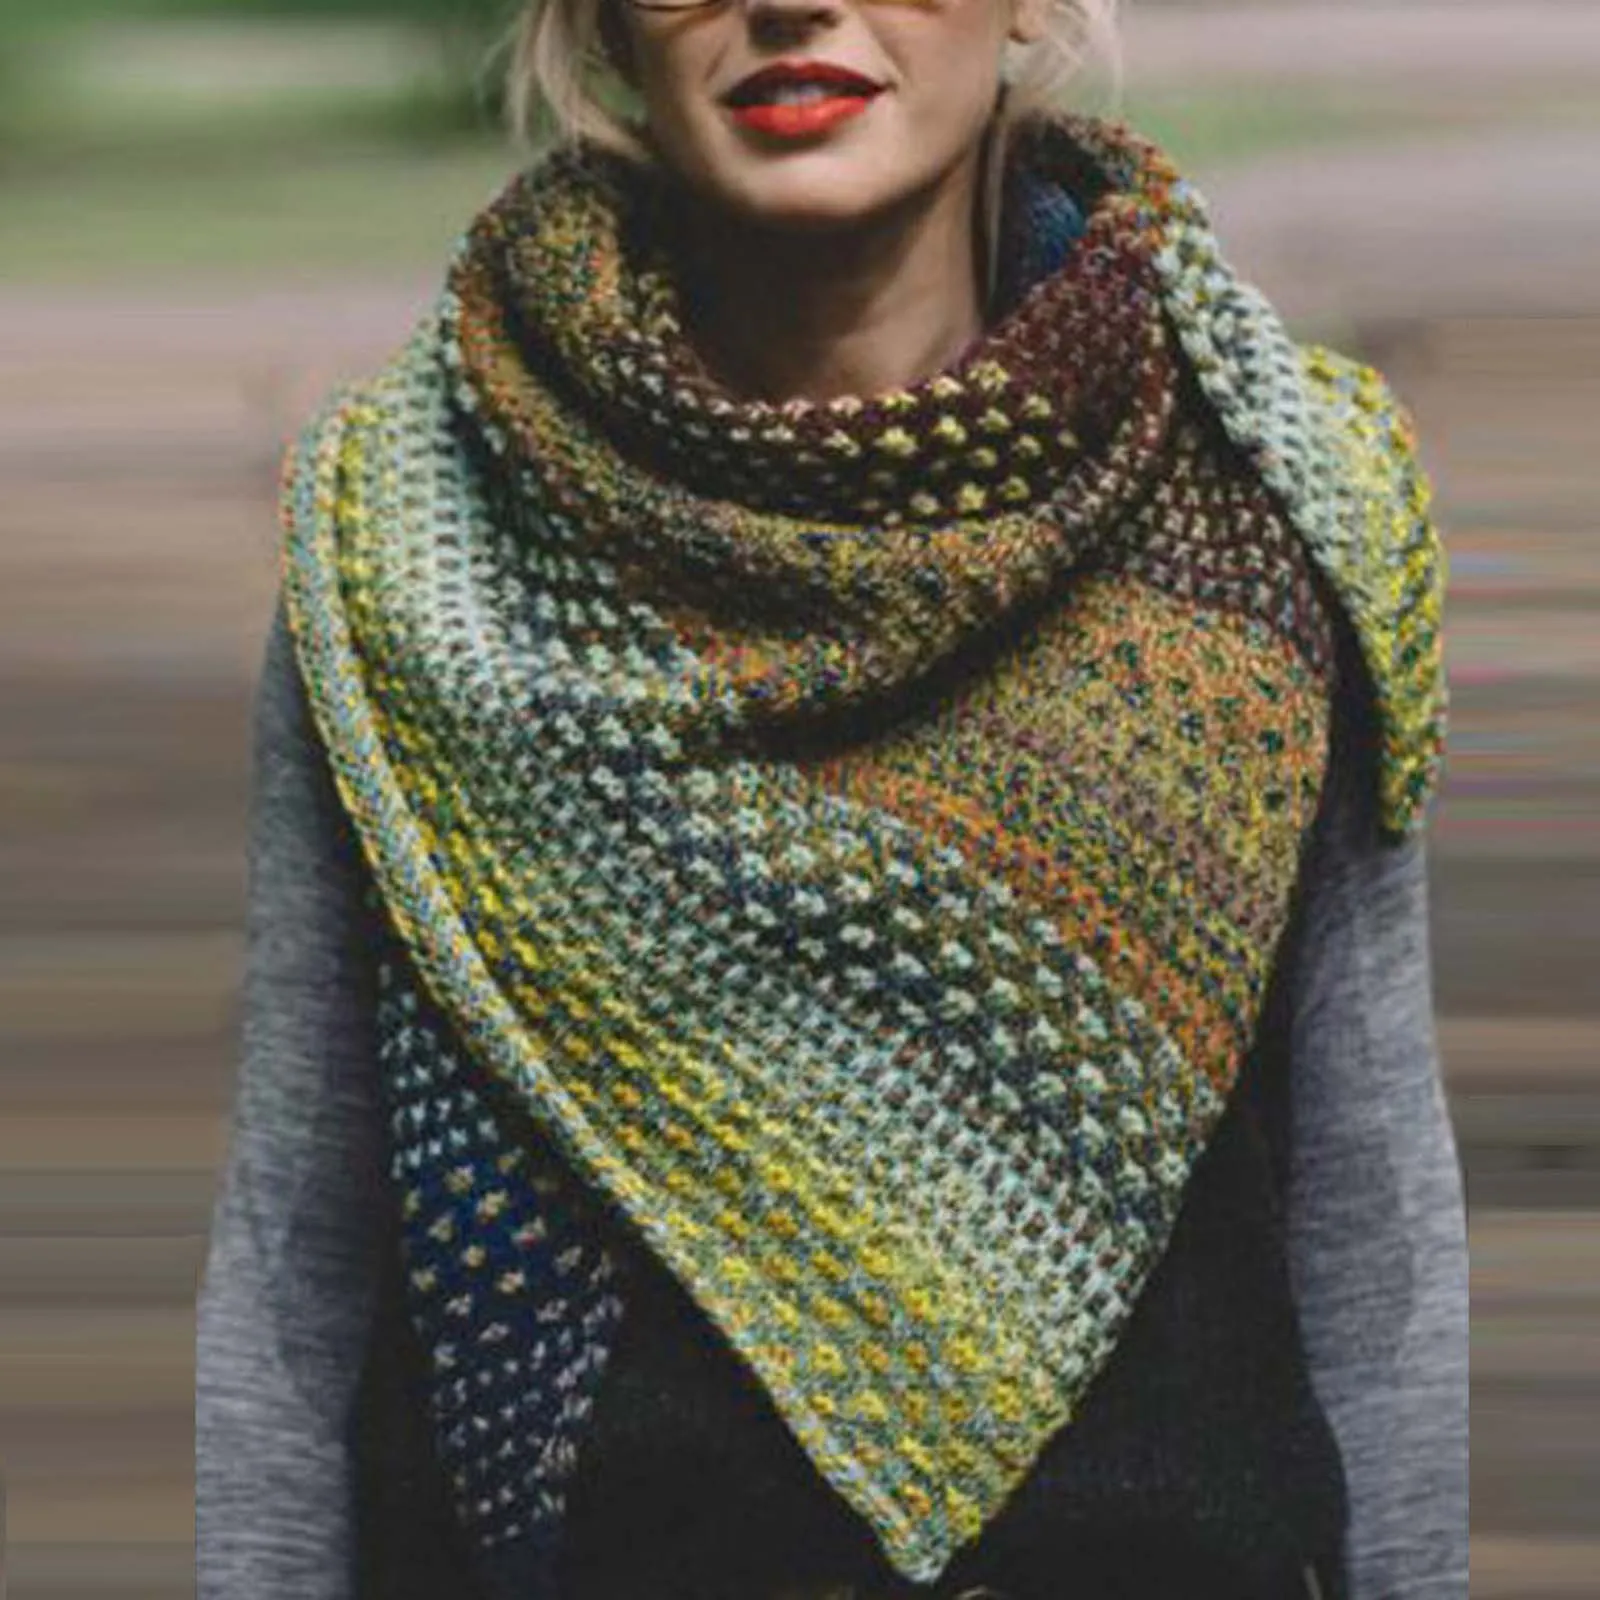 Las mujeres de Invierno Cálido Cara de Color Colorido Crochet Engrosamiento de punto Suave Chal Bufanda Vintage Otoño Plaid Bufanda Larga Chales шарф hiyab 4